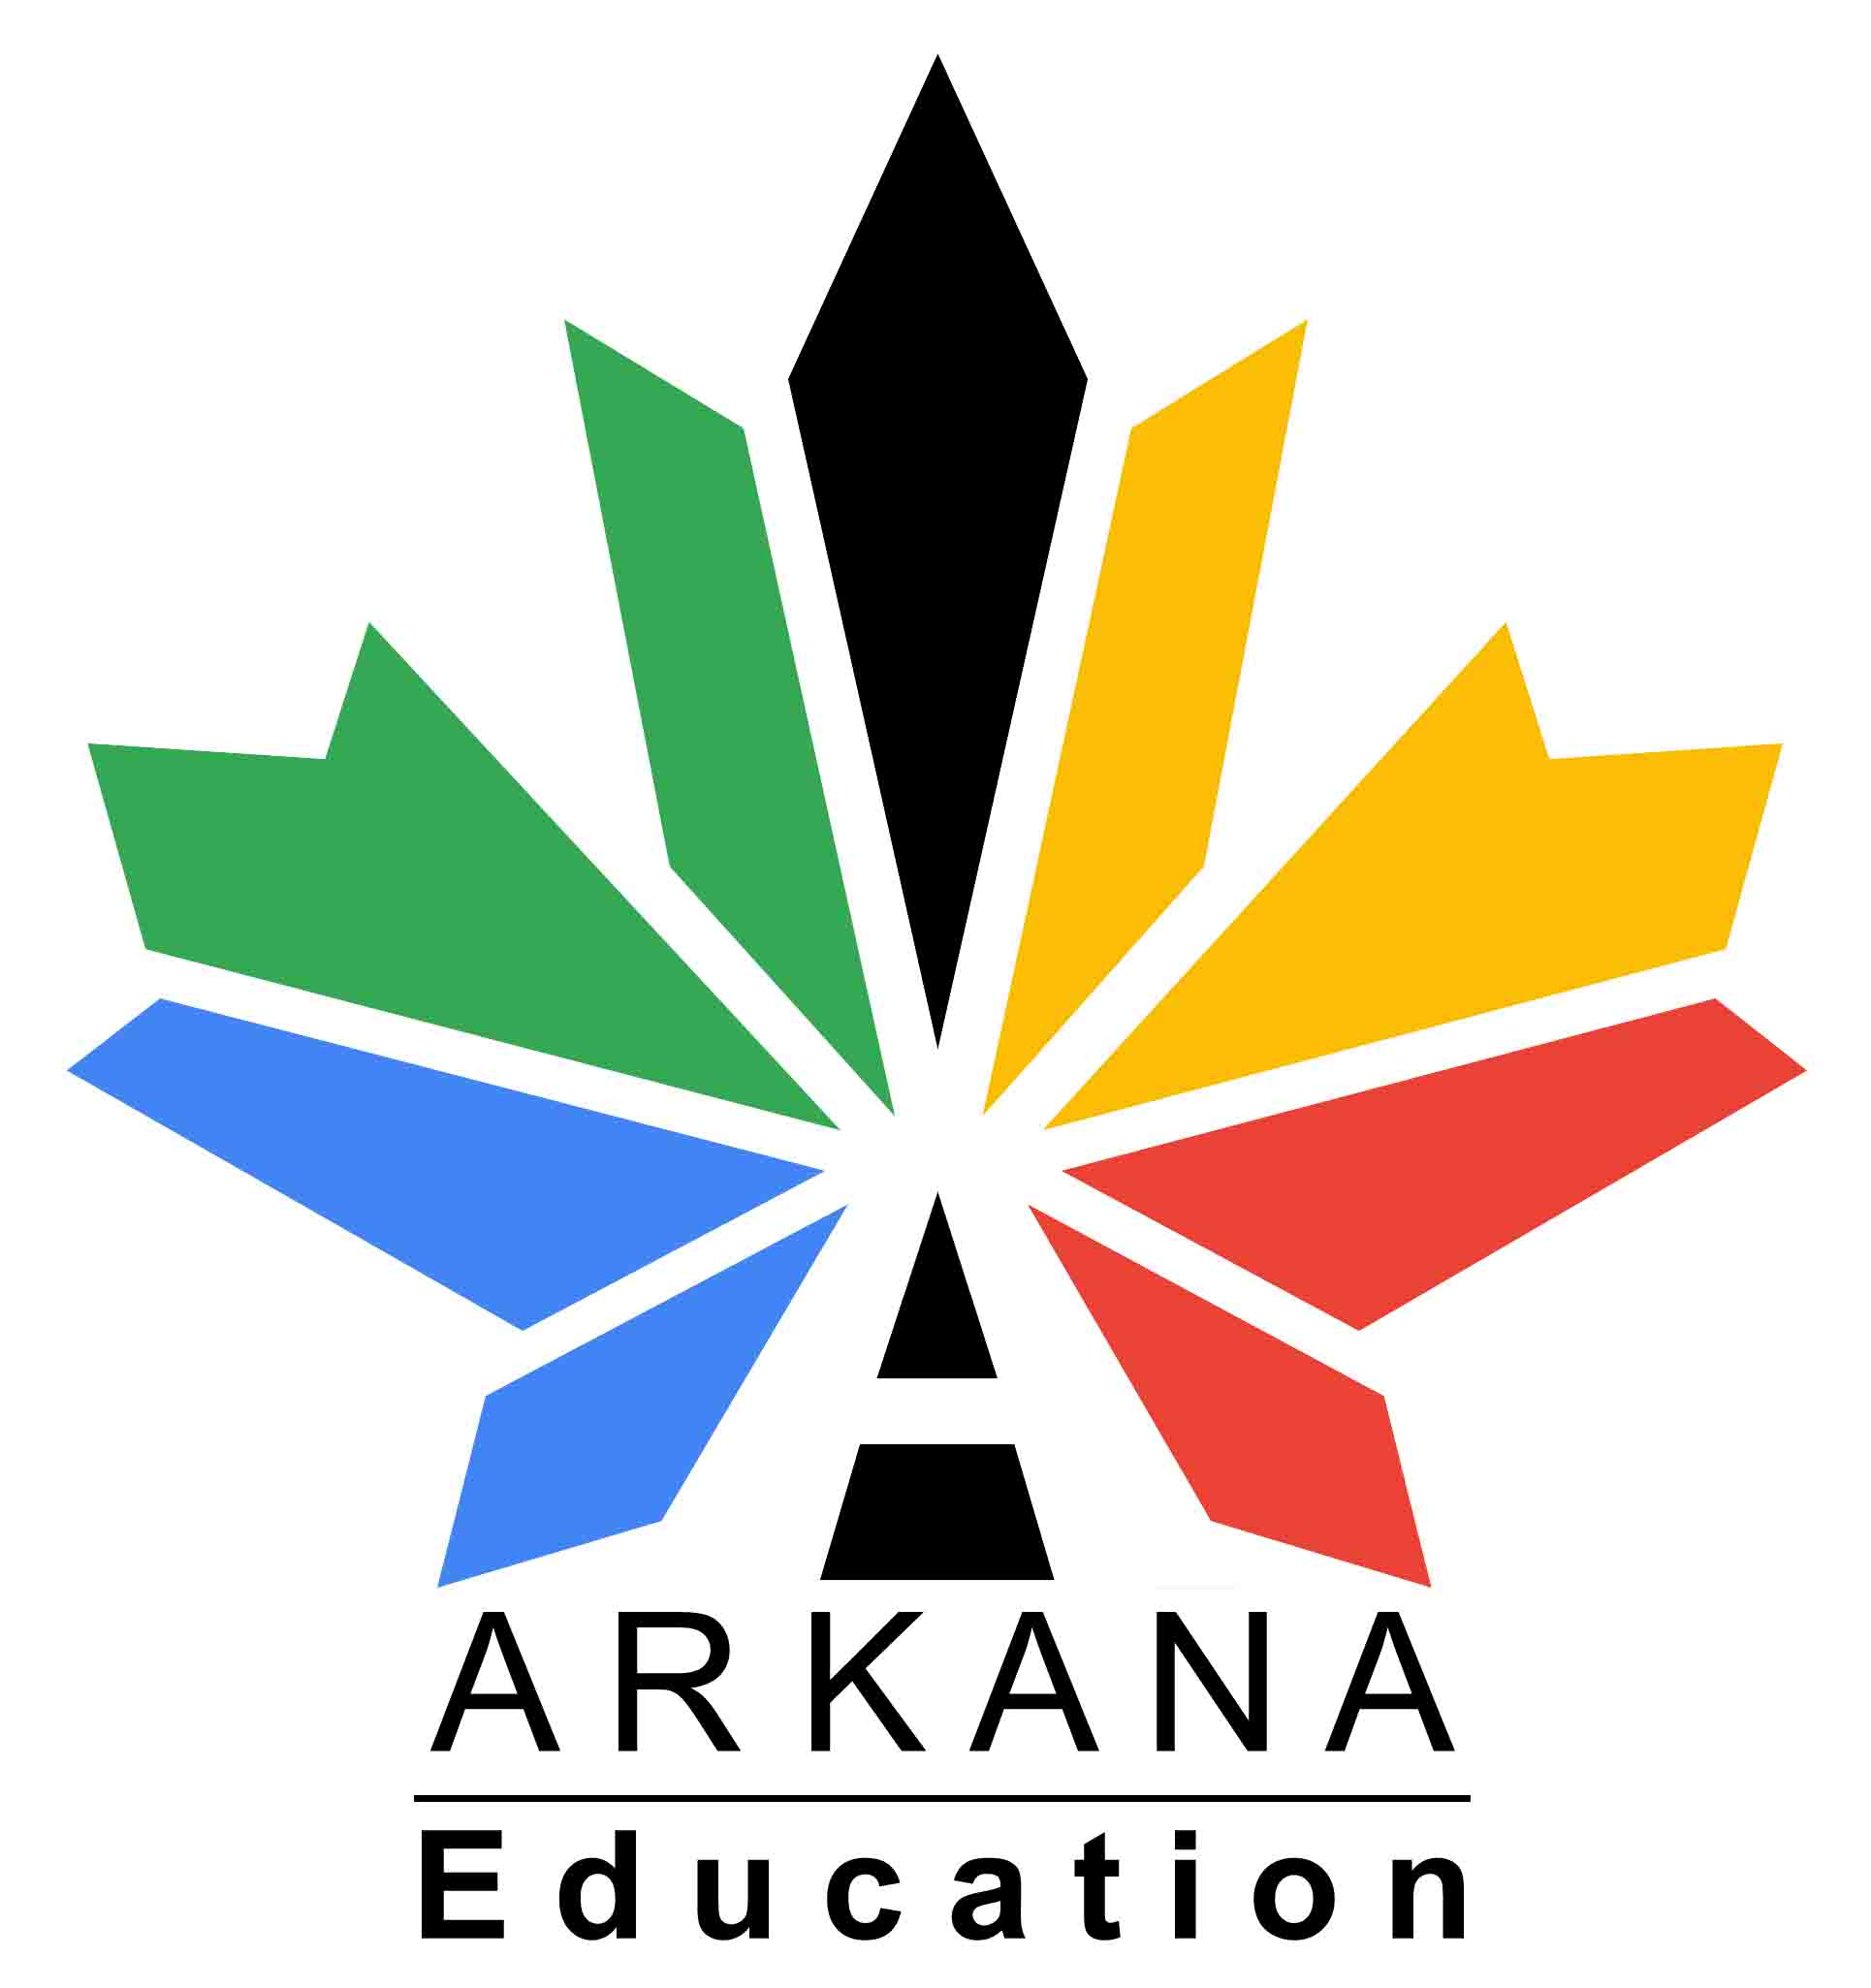 Arkana Education